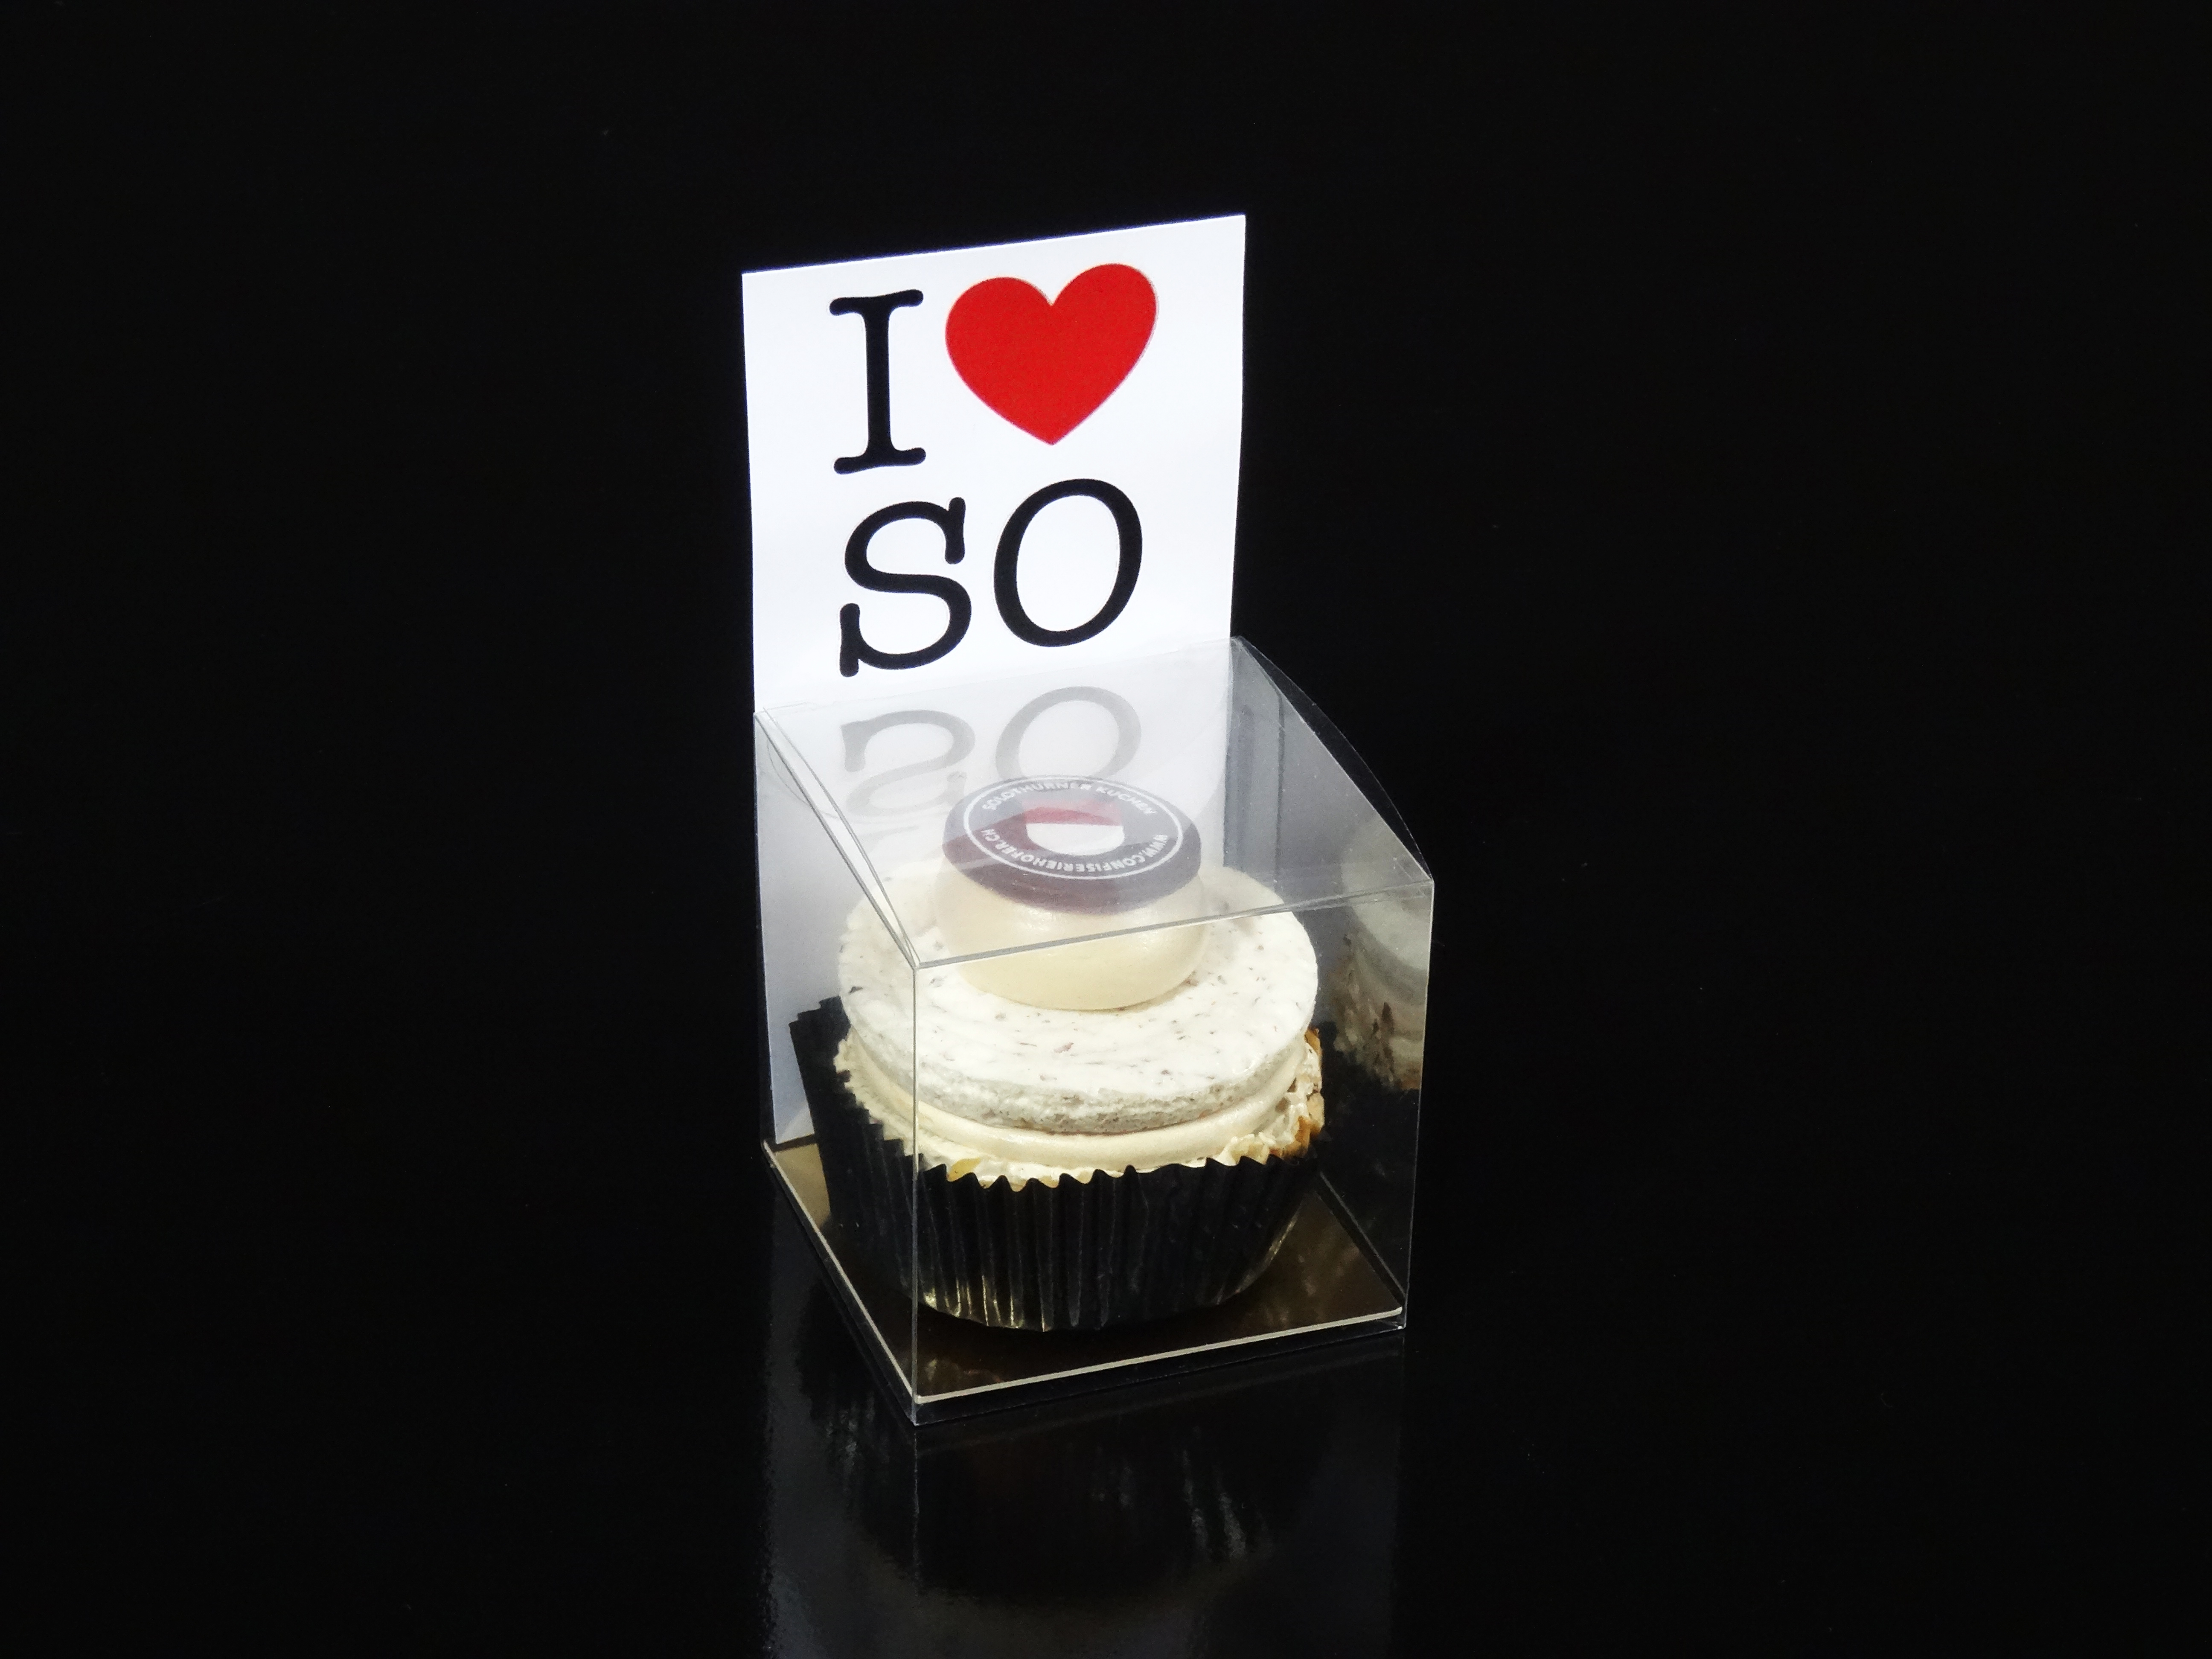 Mini Solothurner Kuchen "I ♥ SO" in Box